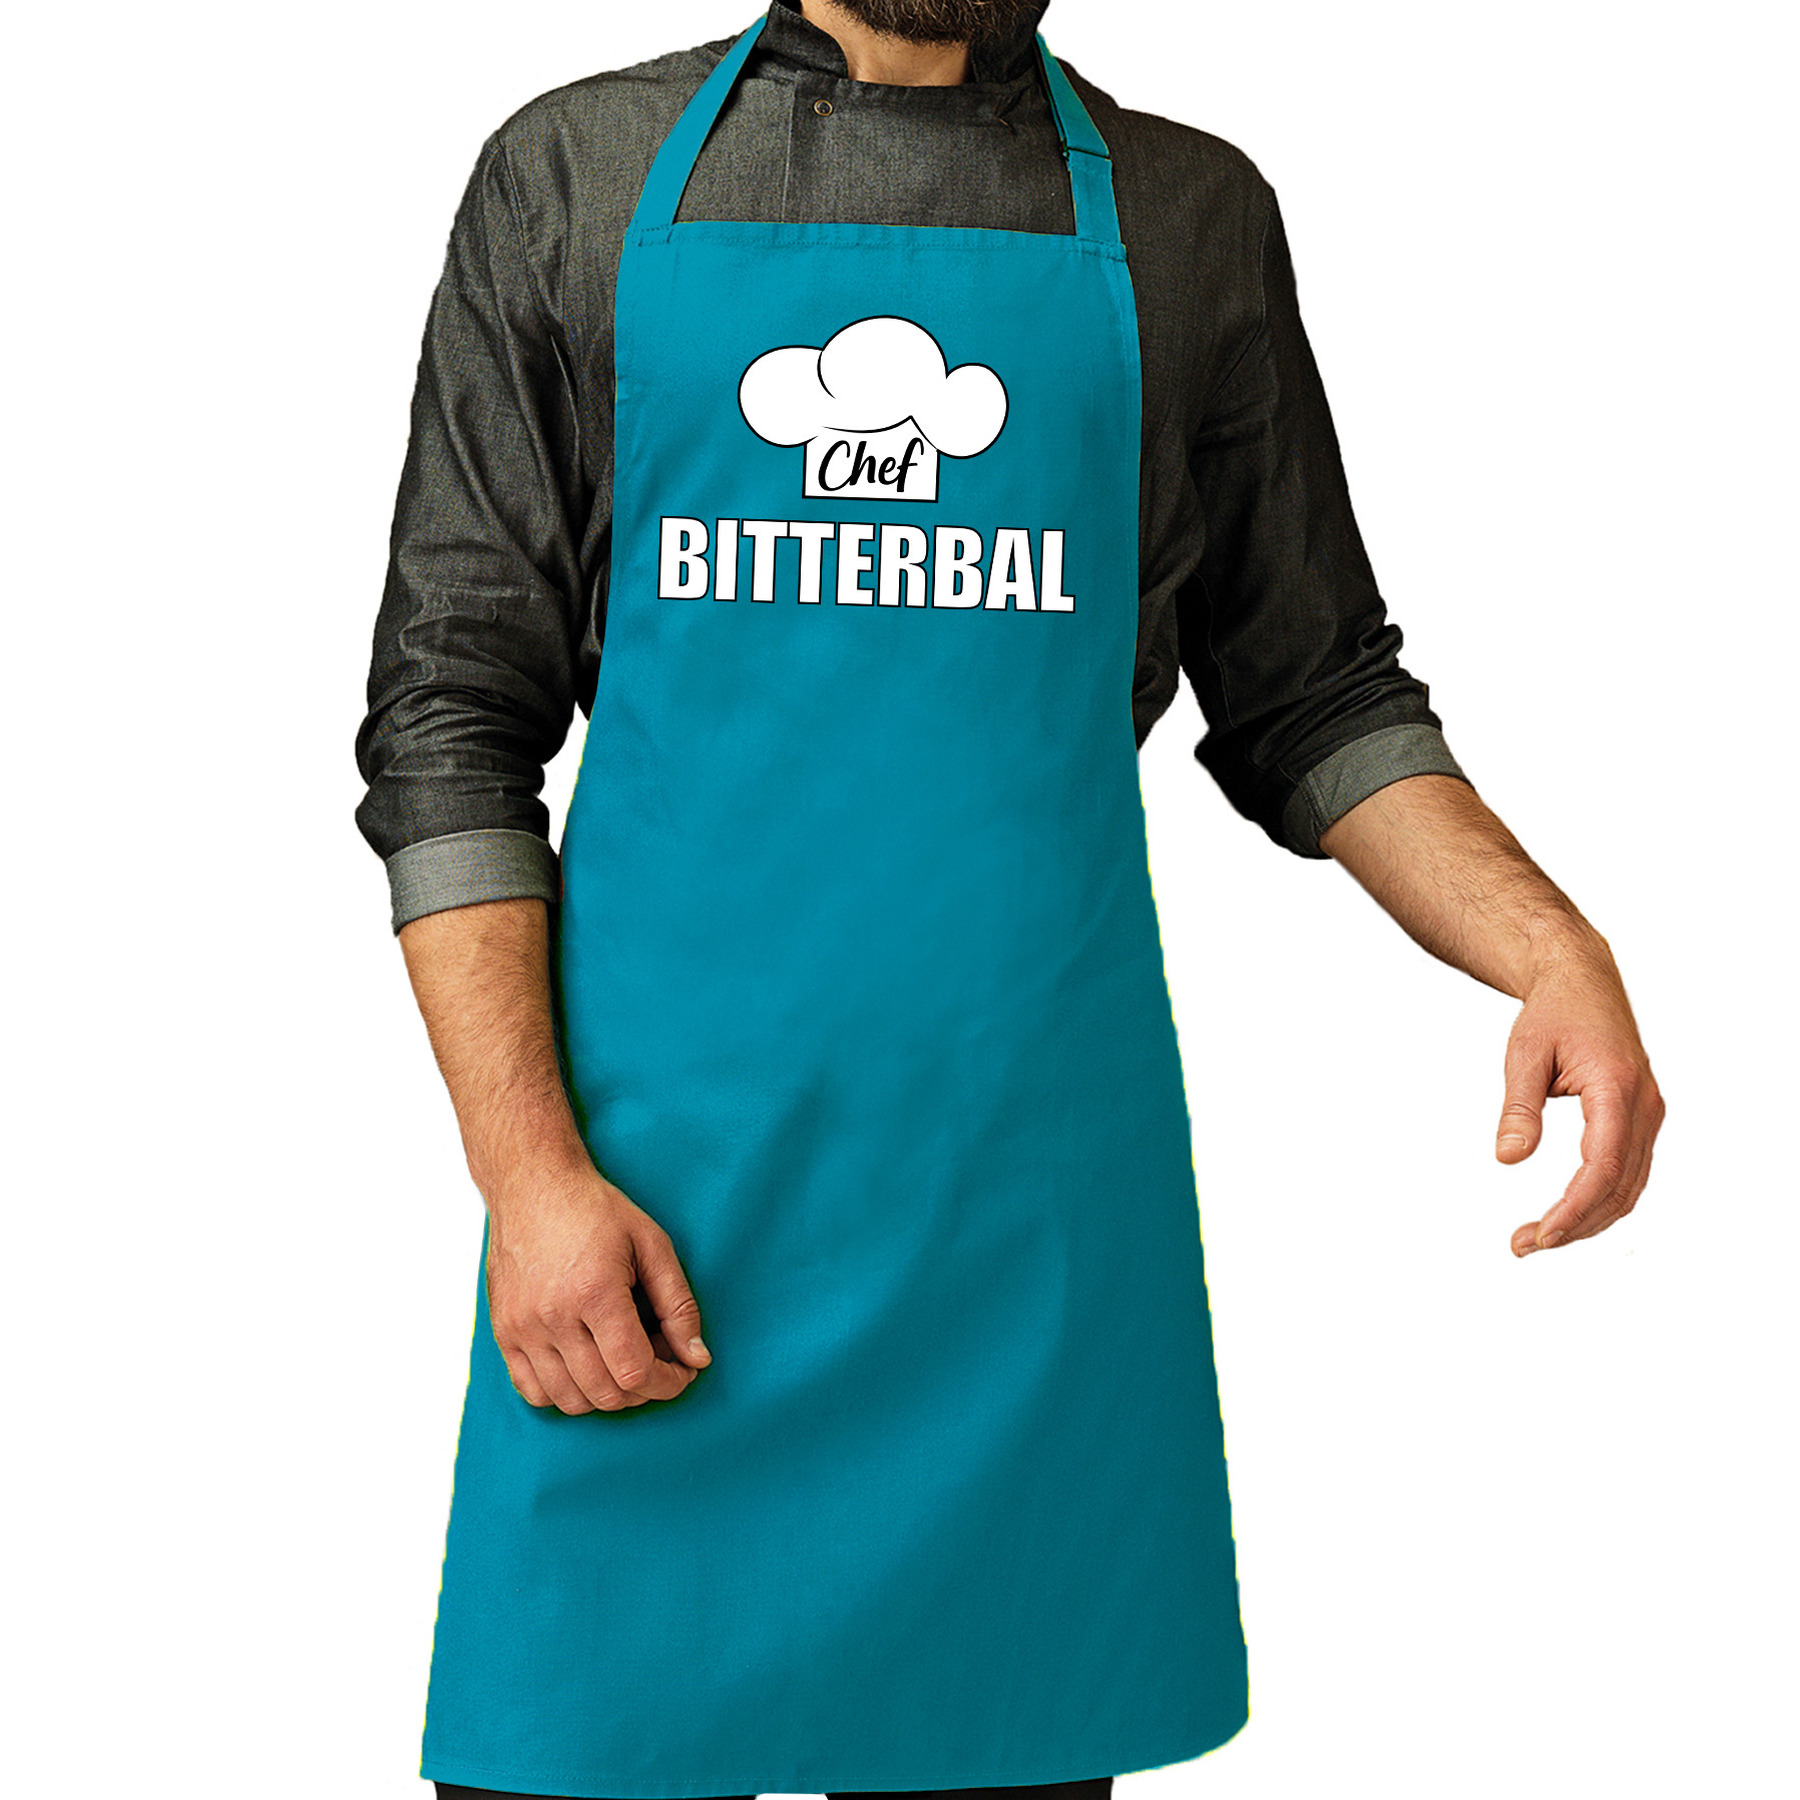 Chef bitterbal schort - keukenschort turquoise heren